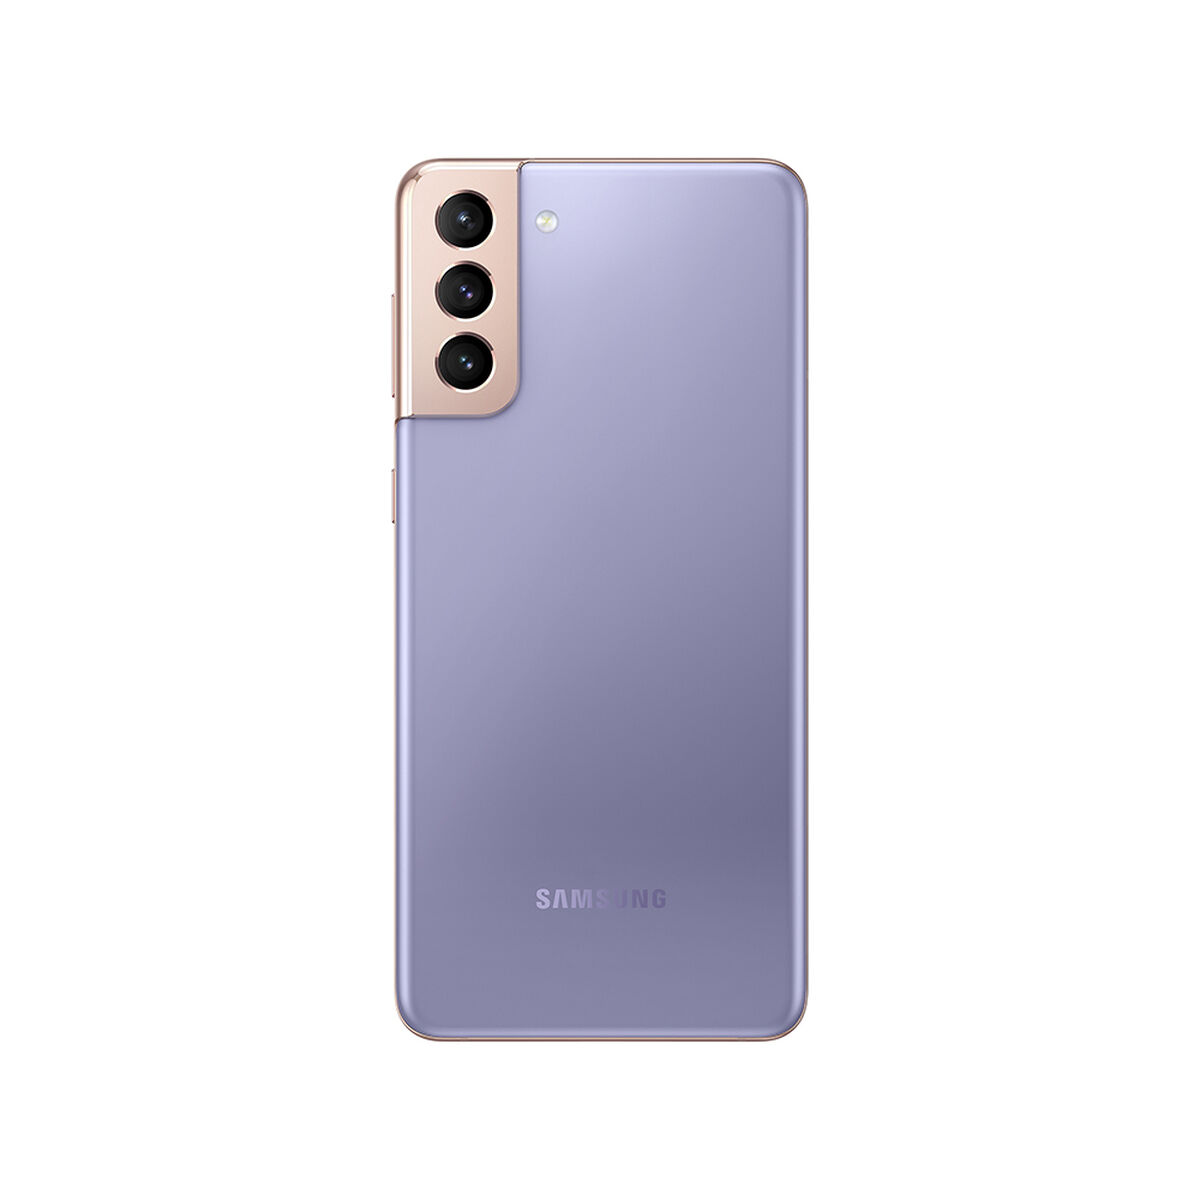 Combo Celular Samsung Galaxy S21+ 128GB 6,2" Phantom Violet Liberado + Minicomponente Sound Tower MX-T50/ZS